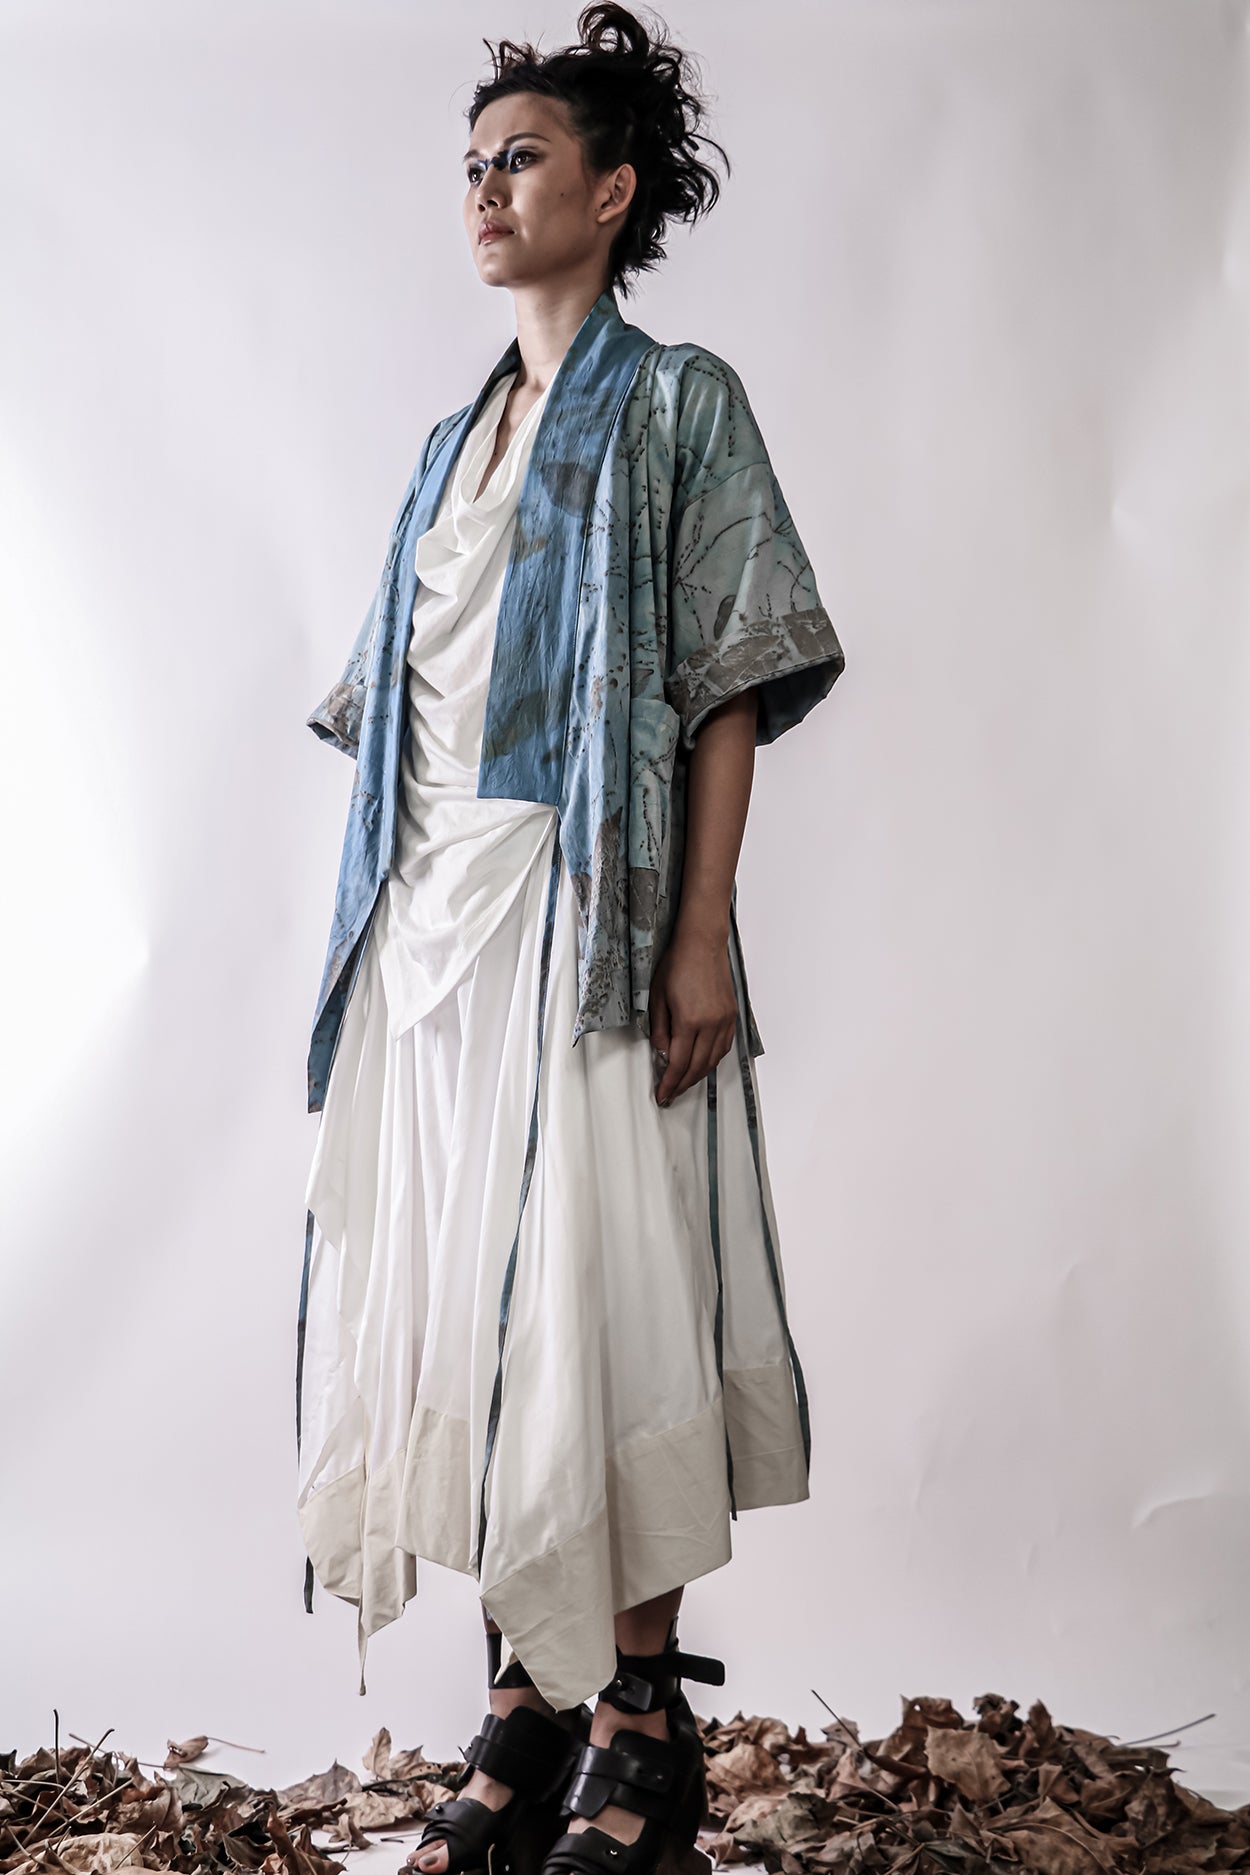 Handmade Indigo Dye and Botanical Print I/B Kimono Jacket